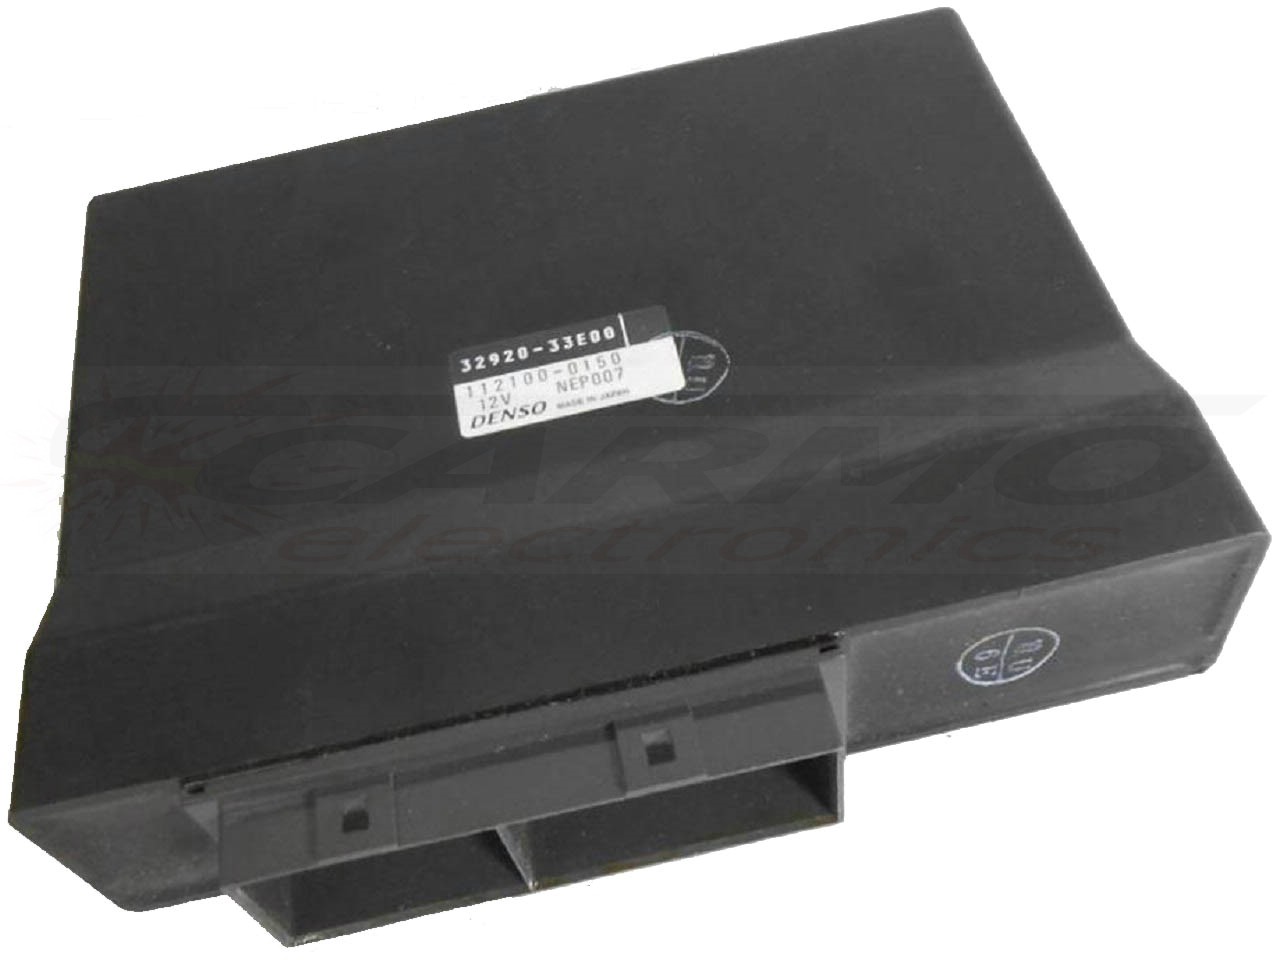 GSXR750 SRAD ECU ECM CDI controlador de caixa preta de computador (32920-33E)